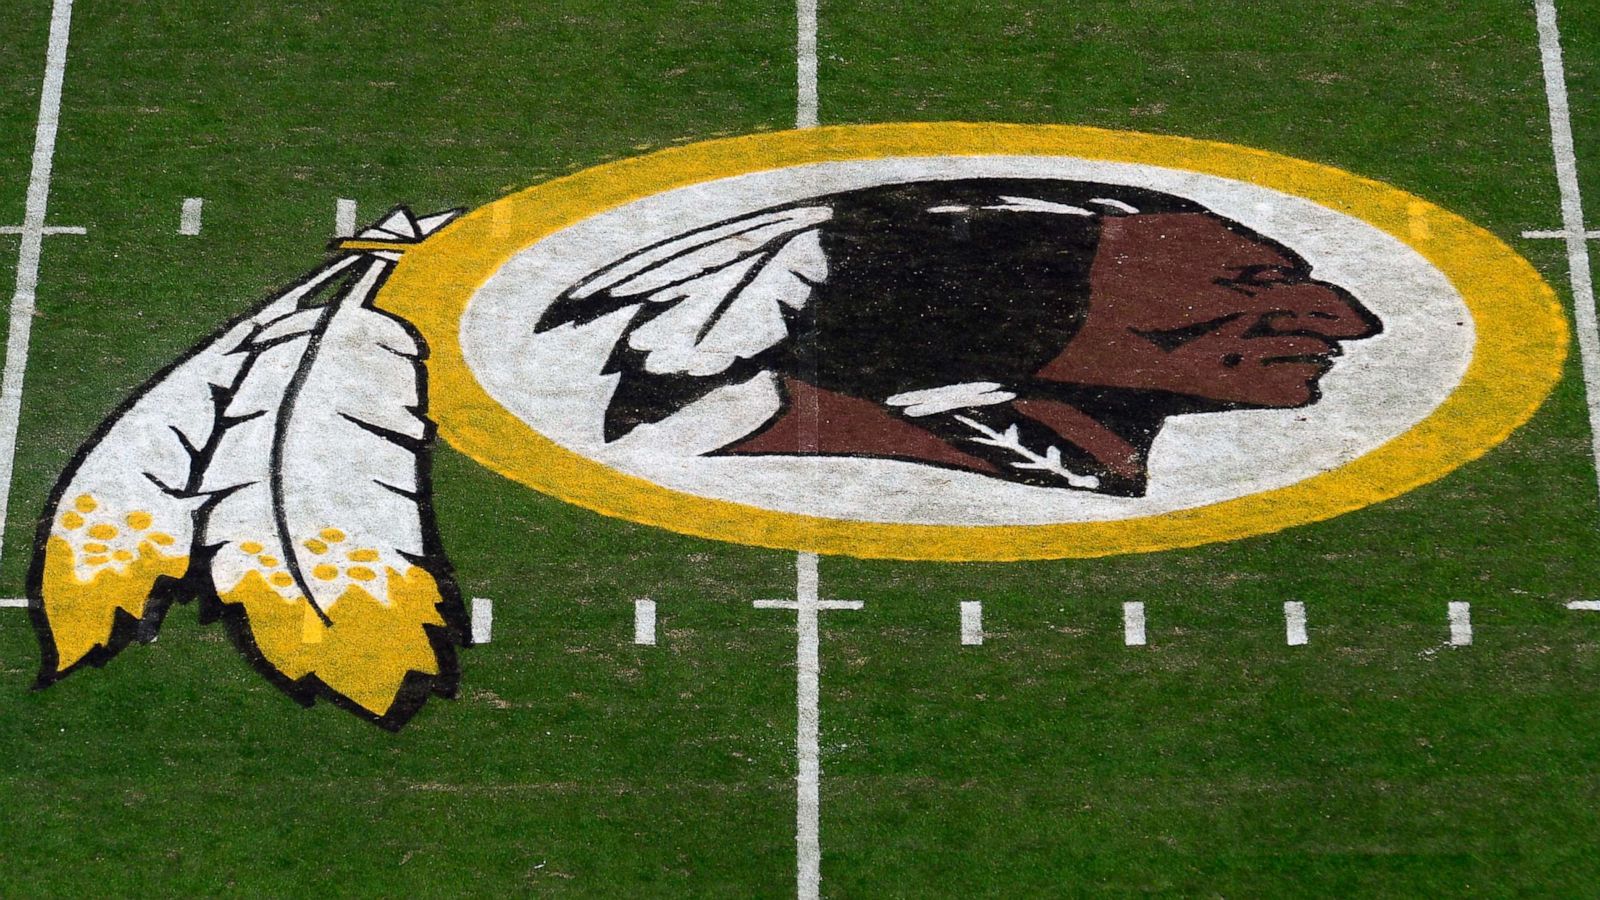 Washington Redskins to undergo 'thorough review' of team name - ABC News